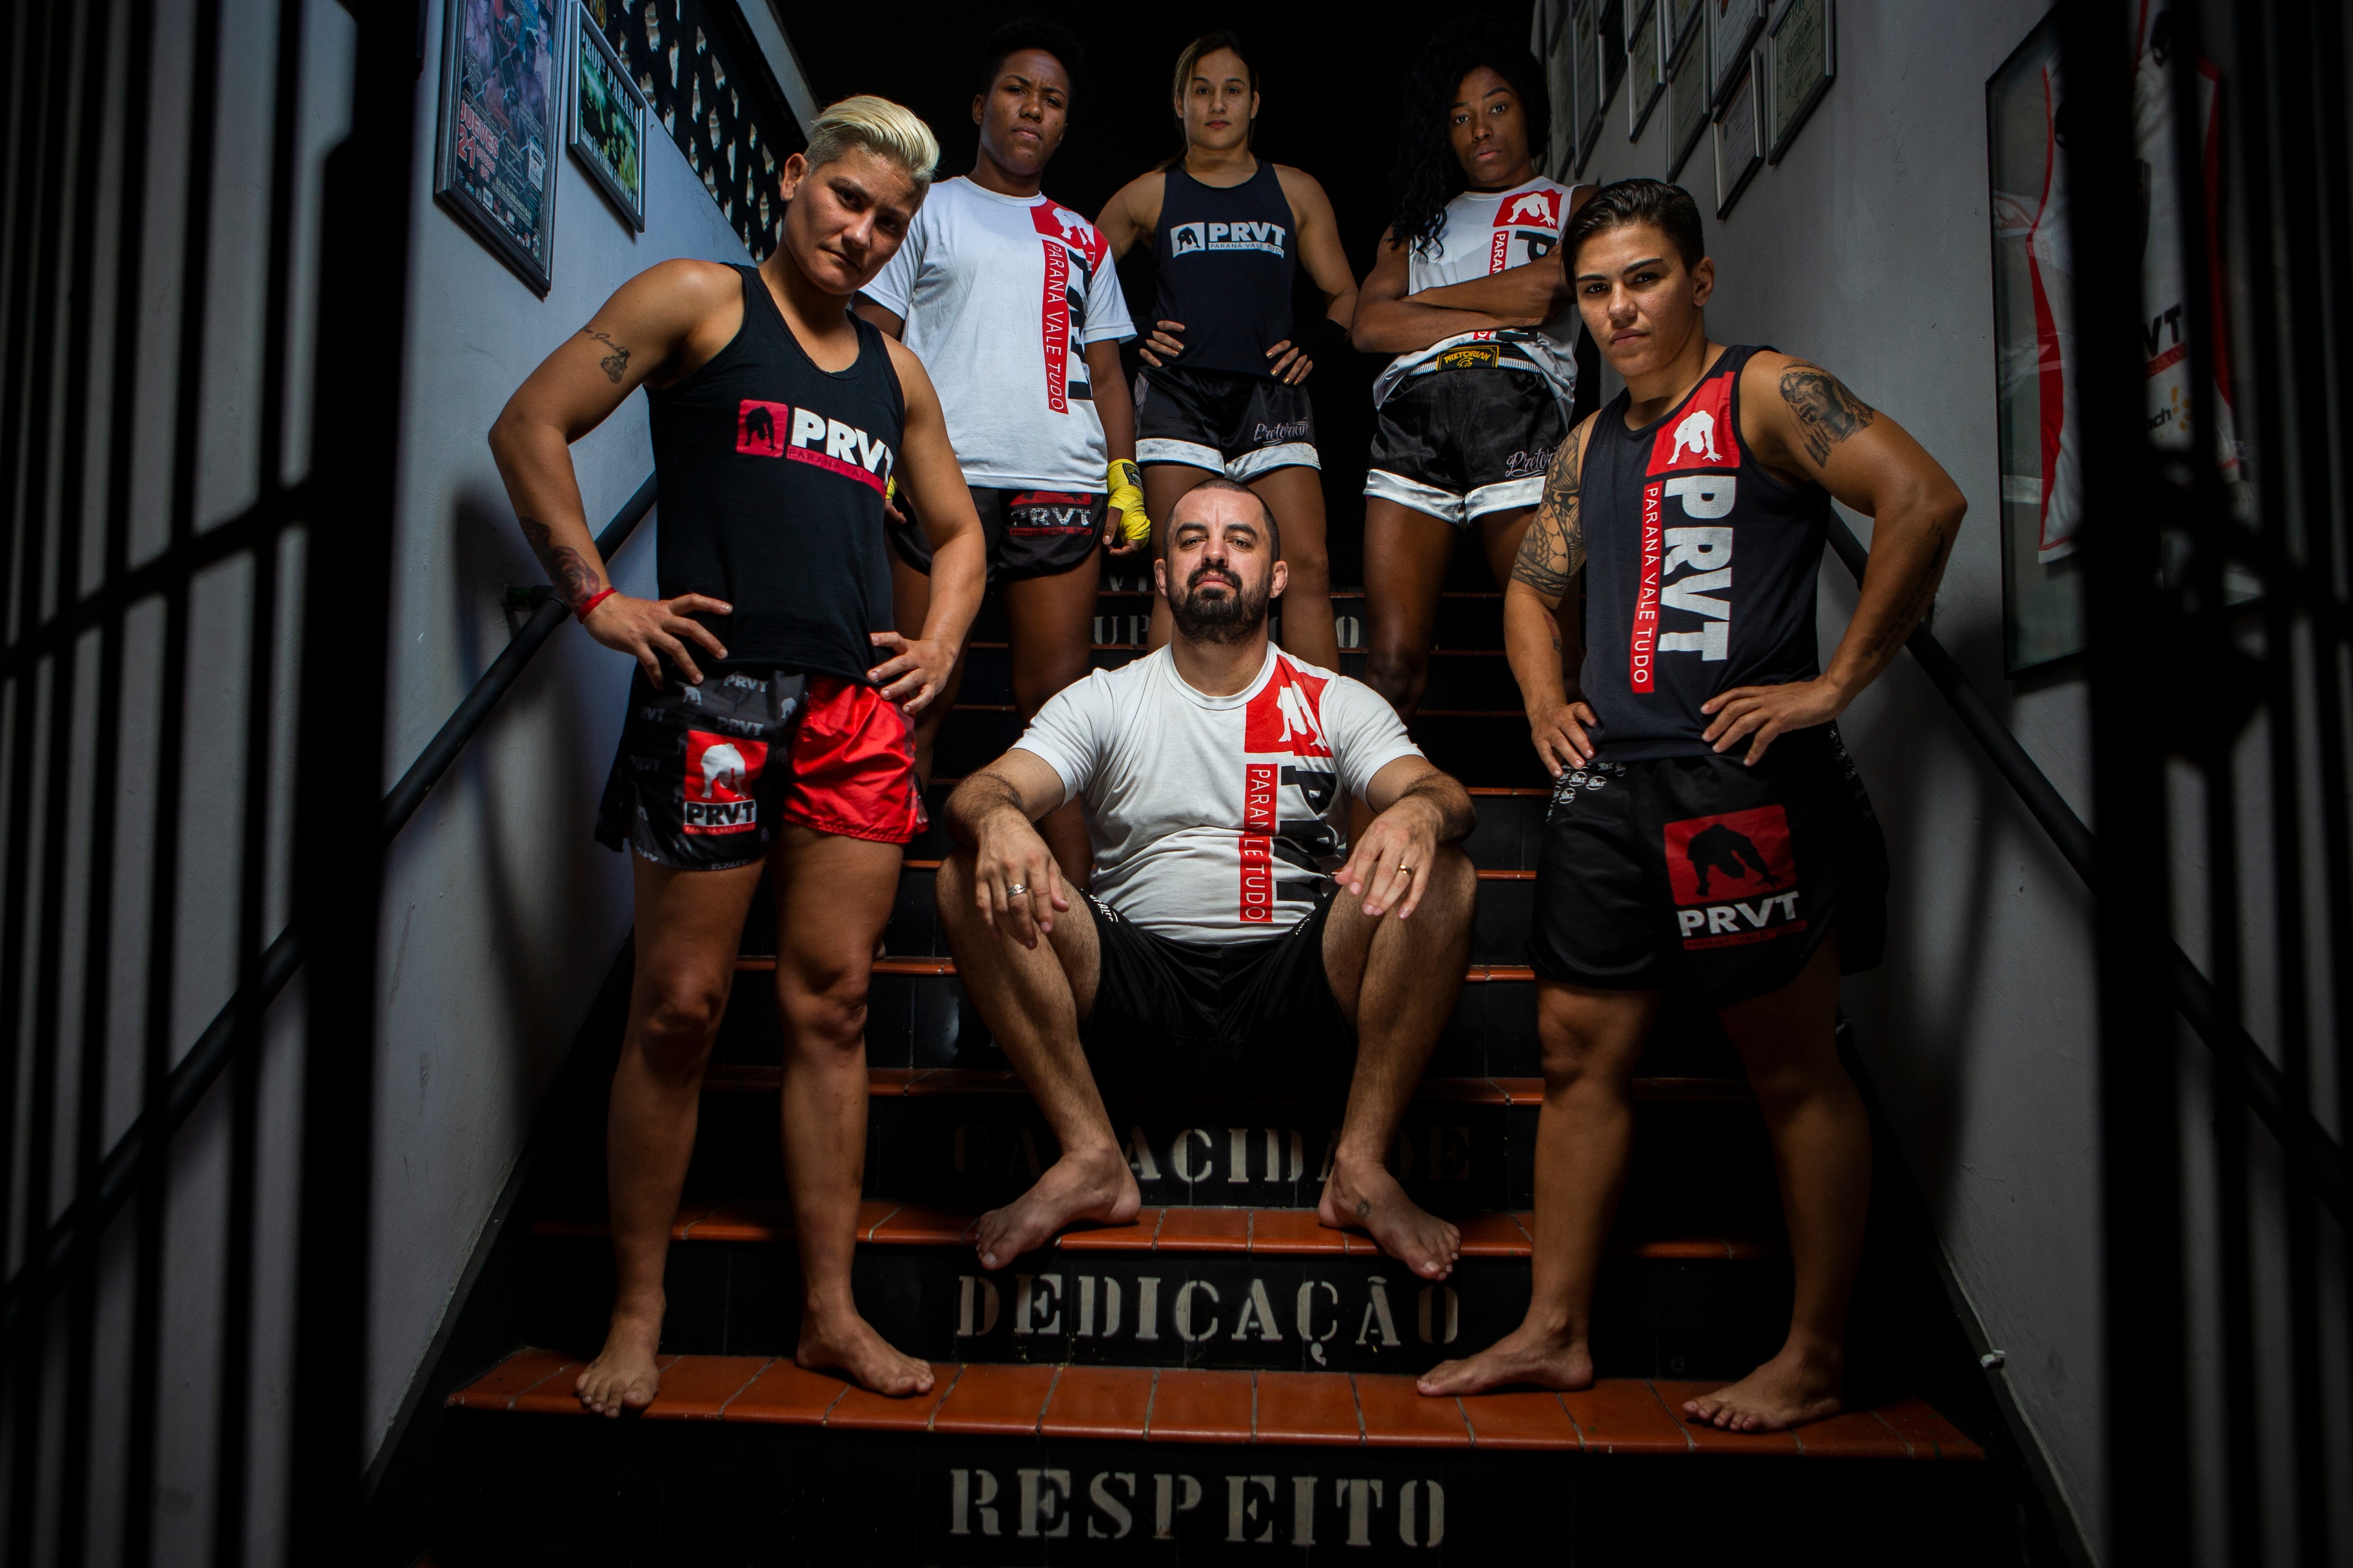 Ele por elas: Mestre Paraná, o pioneiro do MMA feminino no Brasil